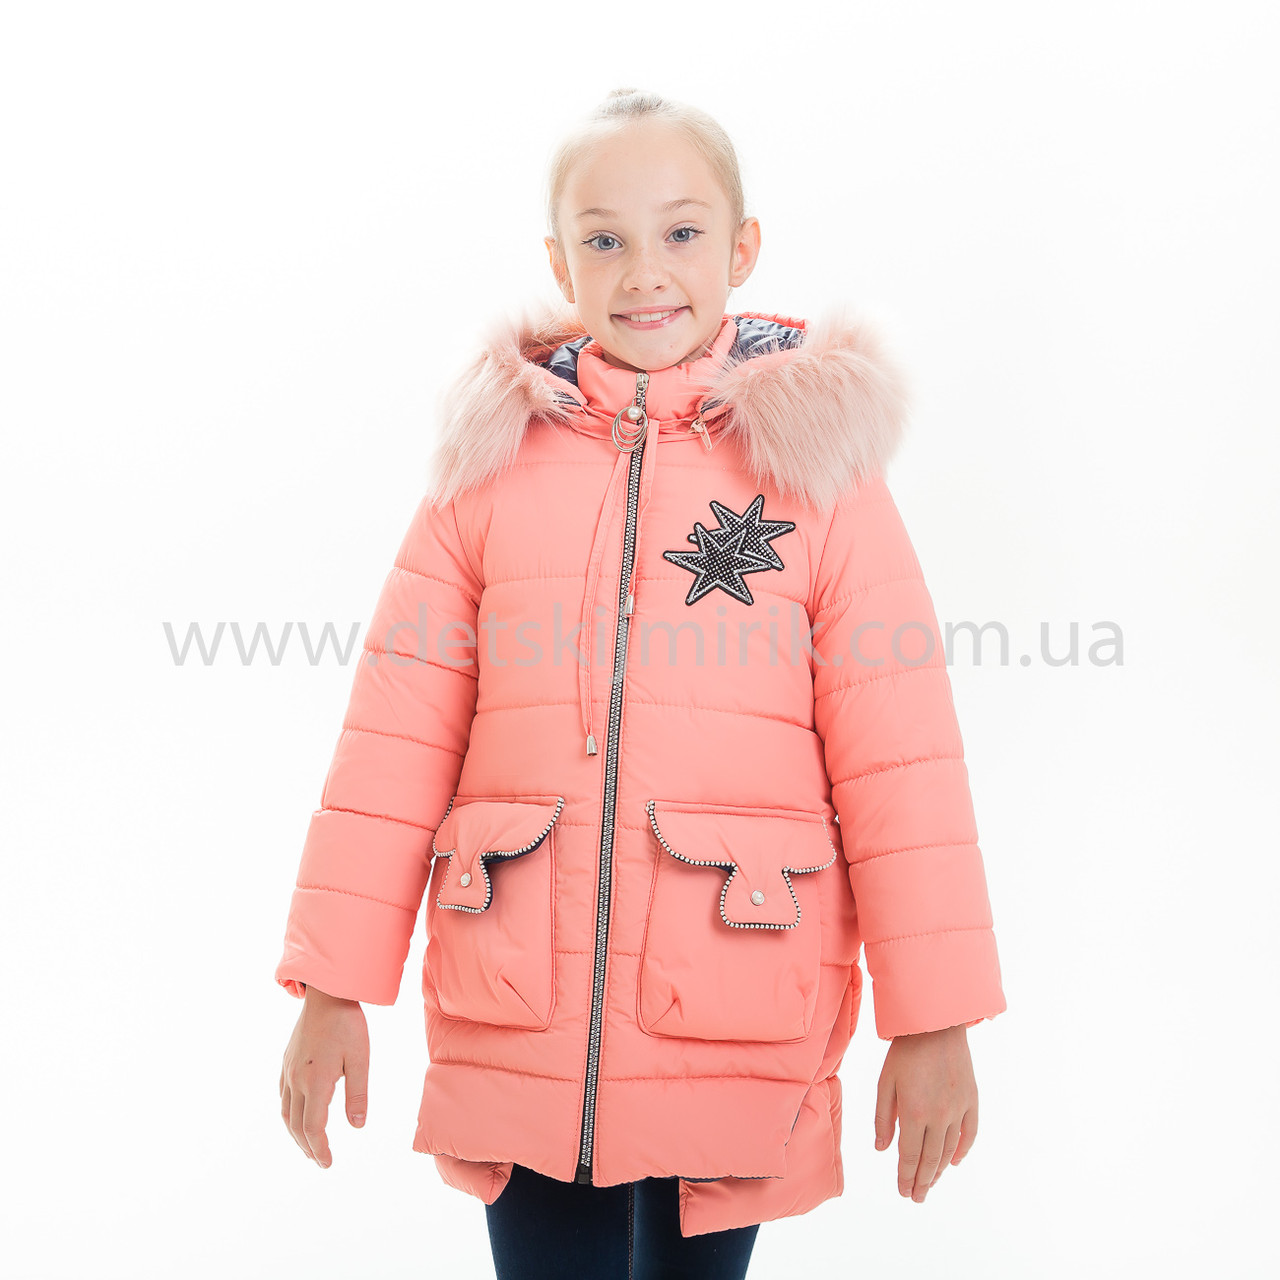 Зимова куртка для дівчинки "Яніна", Зима 2019 року